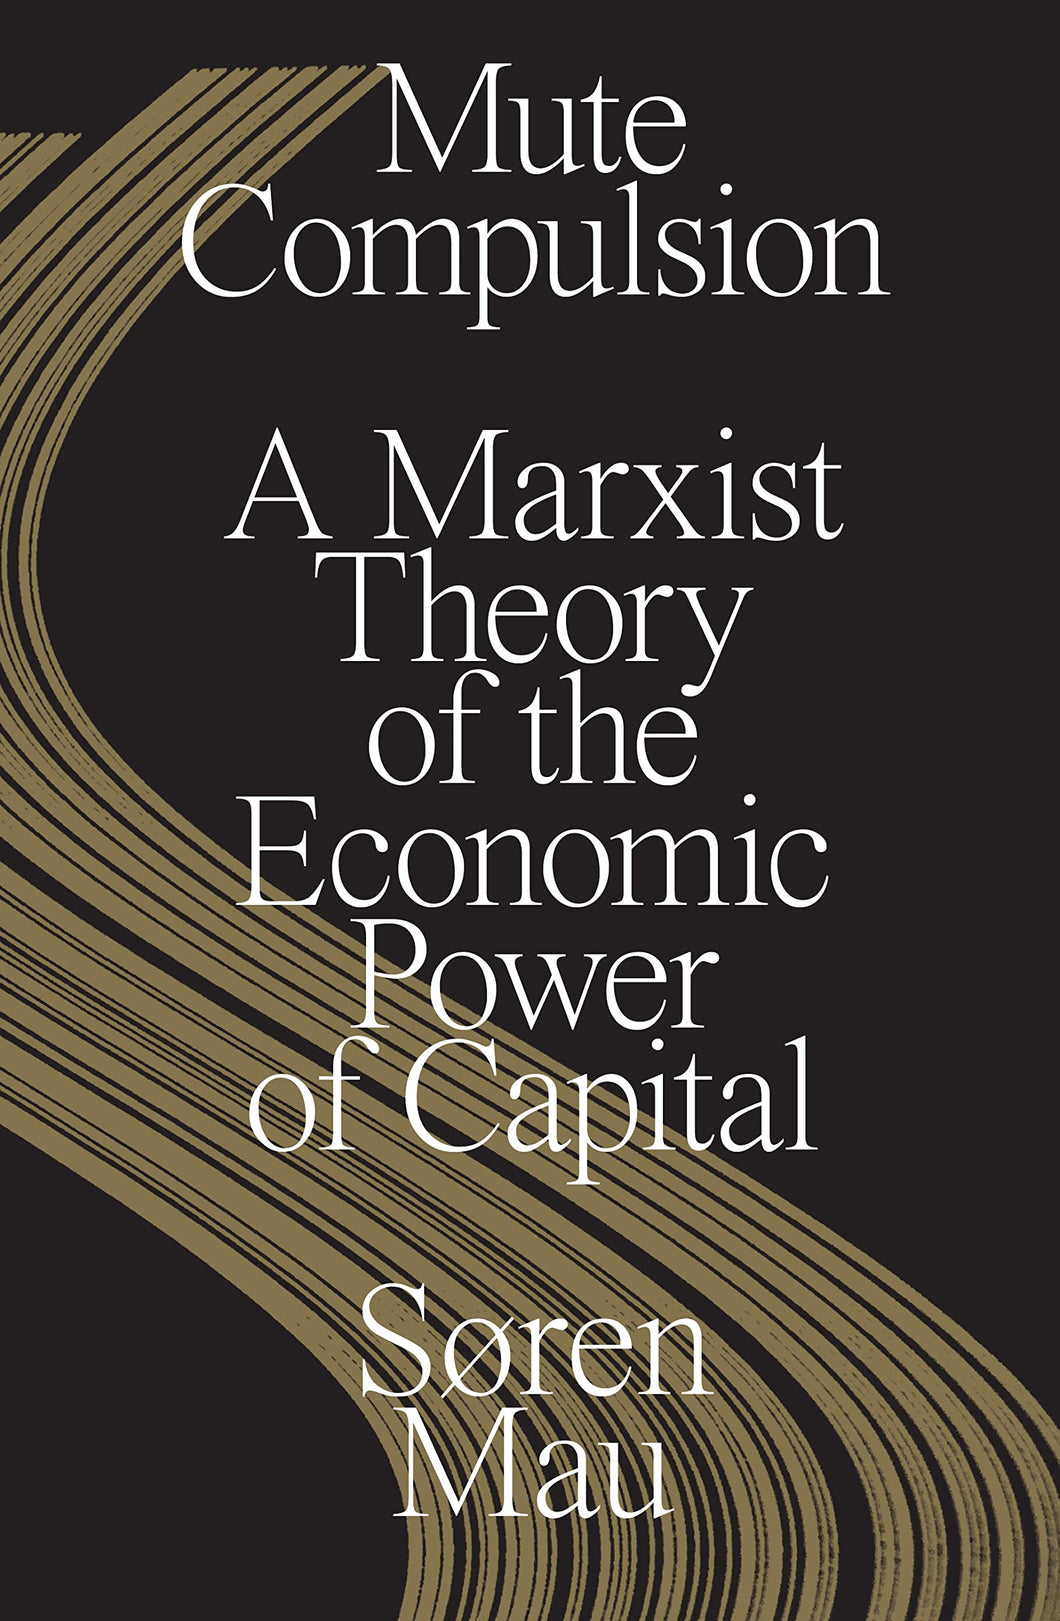 Mute Compulsion: A Marxist Theory of the Economic Power of Capital ร้านหนังสือและสิ่งของ เป็นร้านหนังสือภาษาอังกฤษหายาก และร้านกาแฟ หรือ บุ๊คคาเฟ่ ตั้งอยู่สุขุมวิท กรุงเทพ